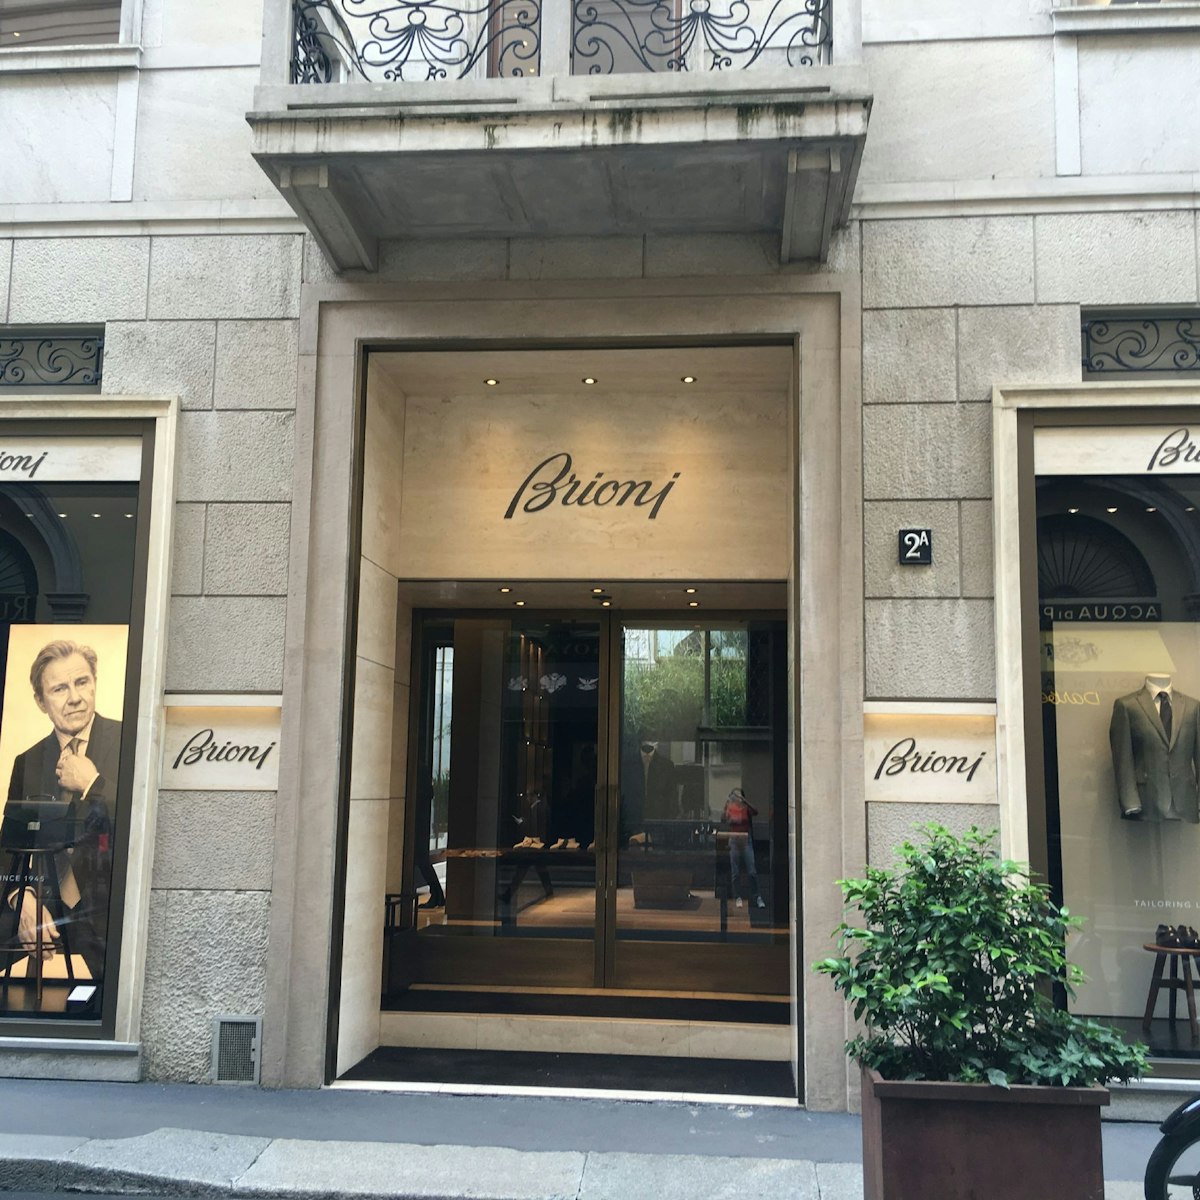 Brioni shop entrance